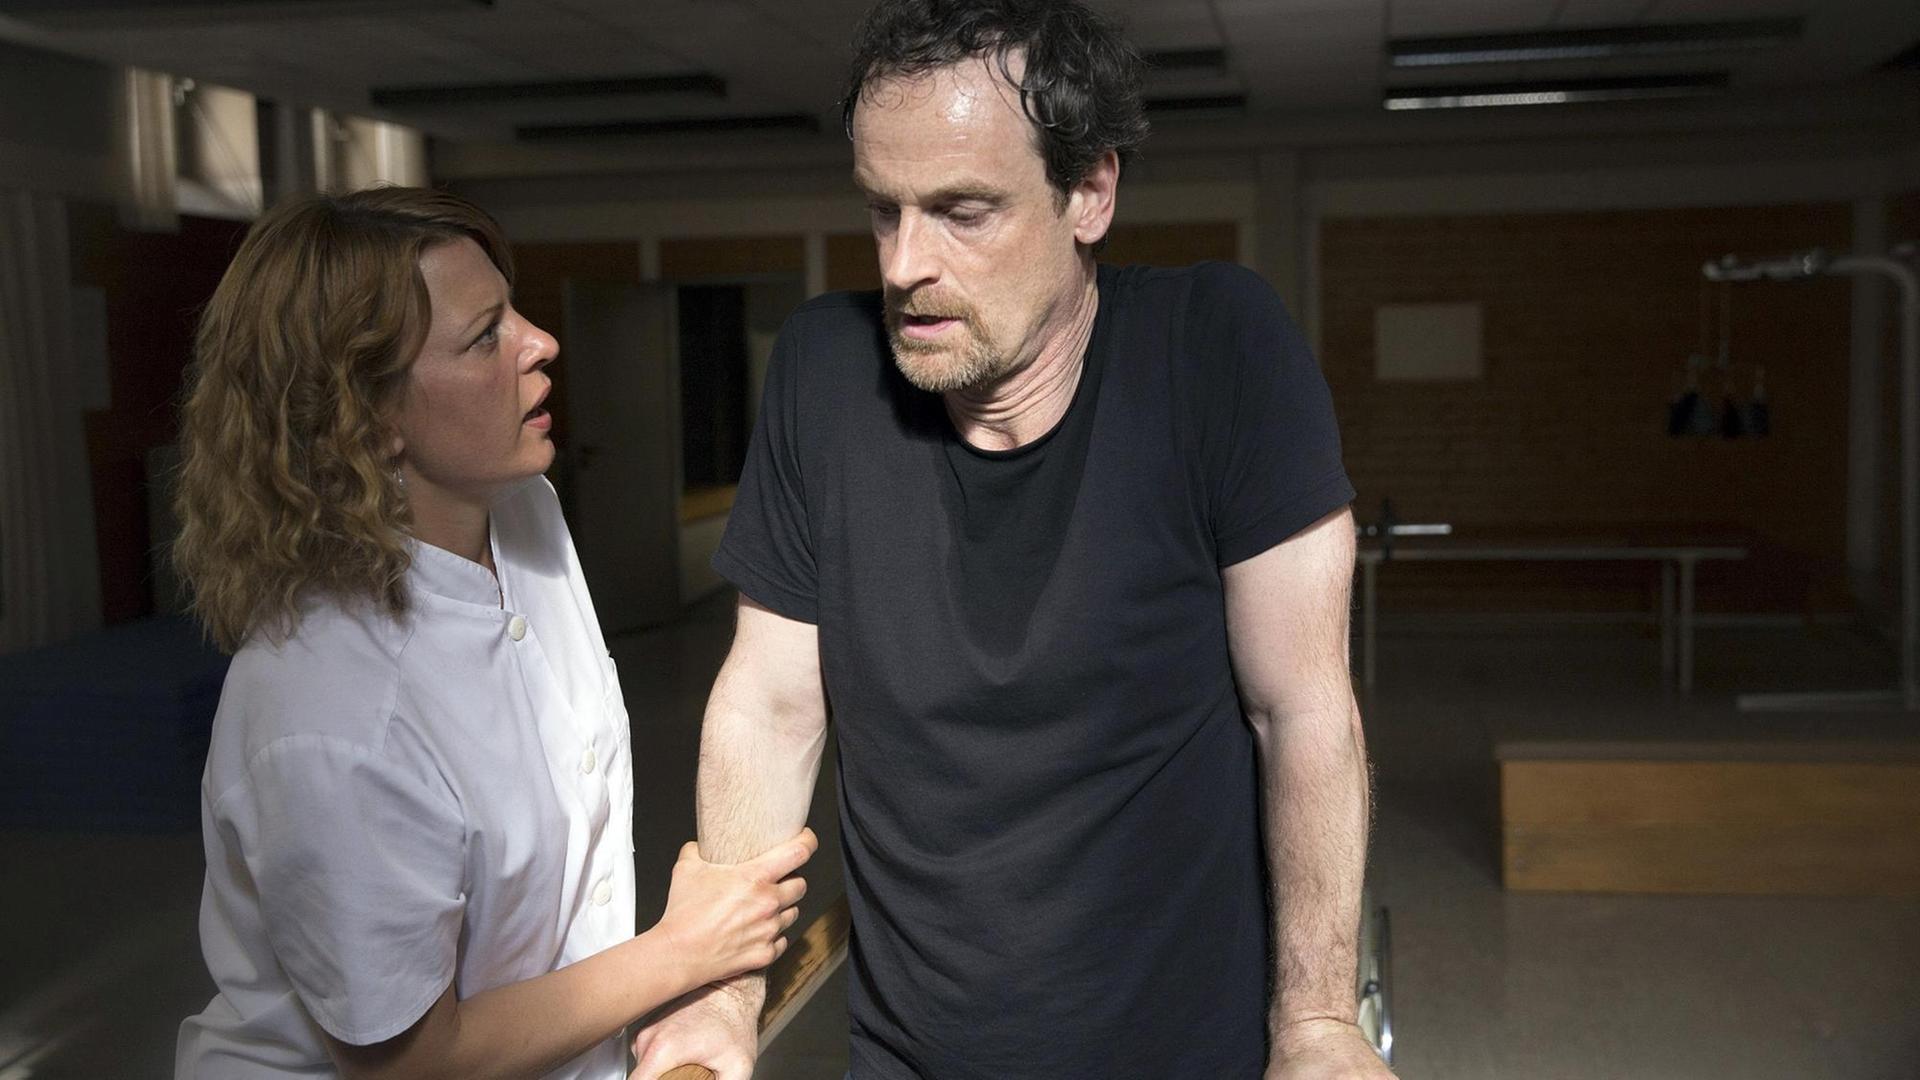 Szene aus der 4. Staffel der Serie "Weissensee": Petra Zeiler (Jördis Triebel) ist beeindruckt vom Kampfgeist ihres Patienten Falk (Jörg Hartmann). Beide stehen an einem Barren.